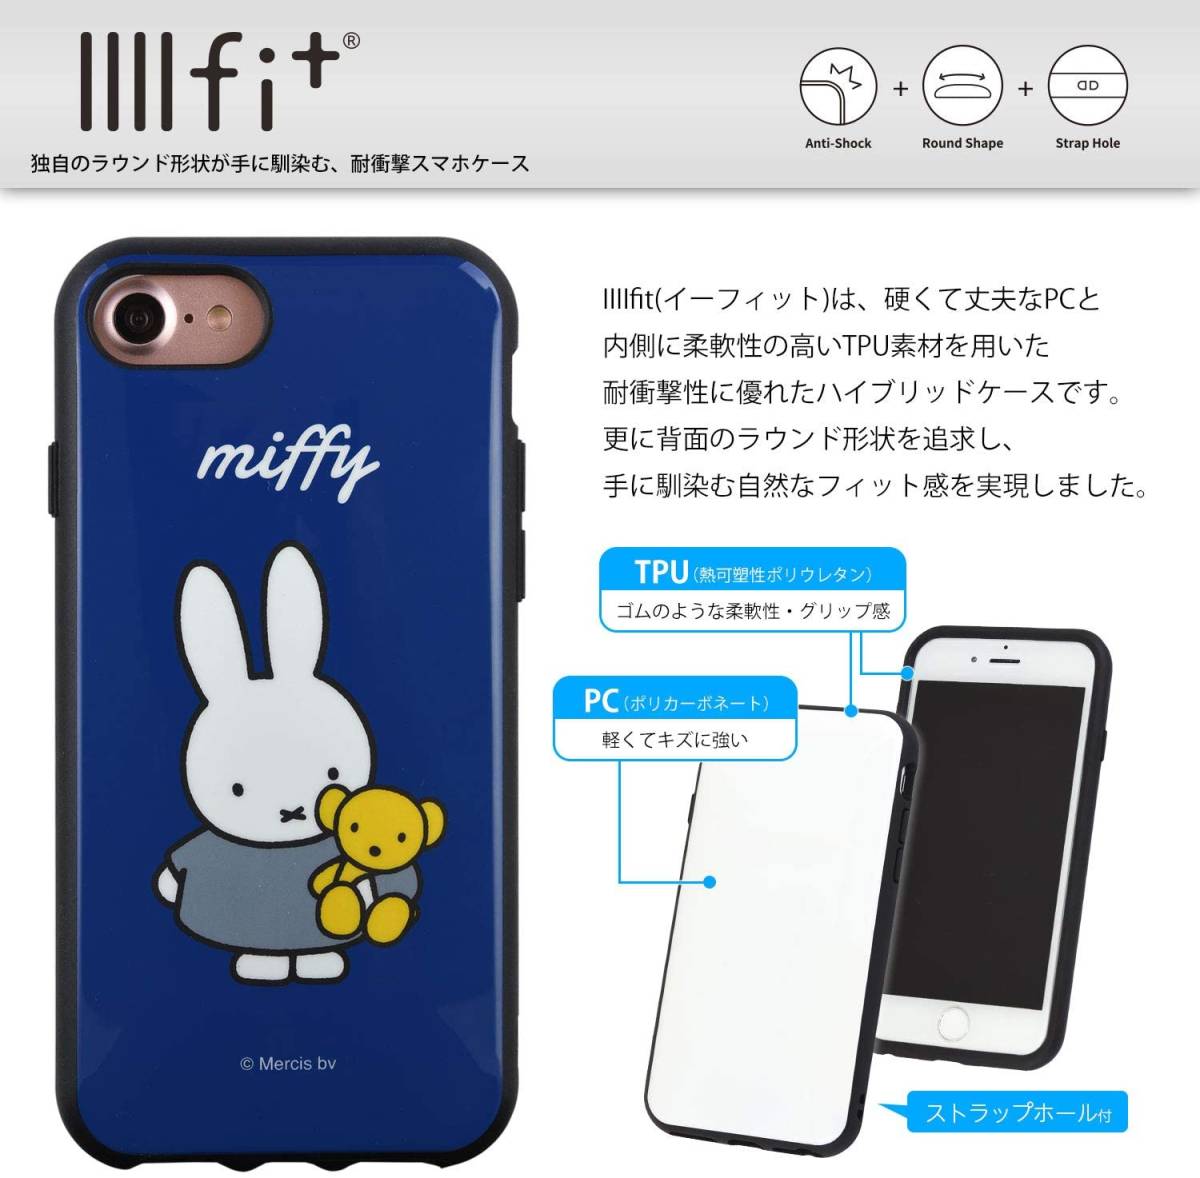 ミッフィー ブルーナ IIIIfit iPhoneSE(第2世代)/8/7/6s/6(4.7インチ)対応ケース iphone スマホ ケース カバー MIFFY イーフィット 新品_画像1